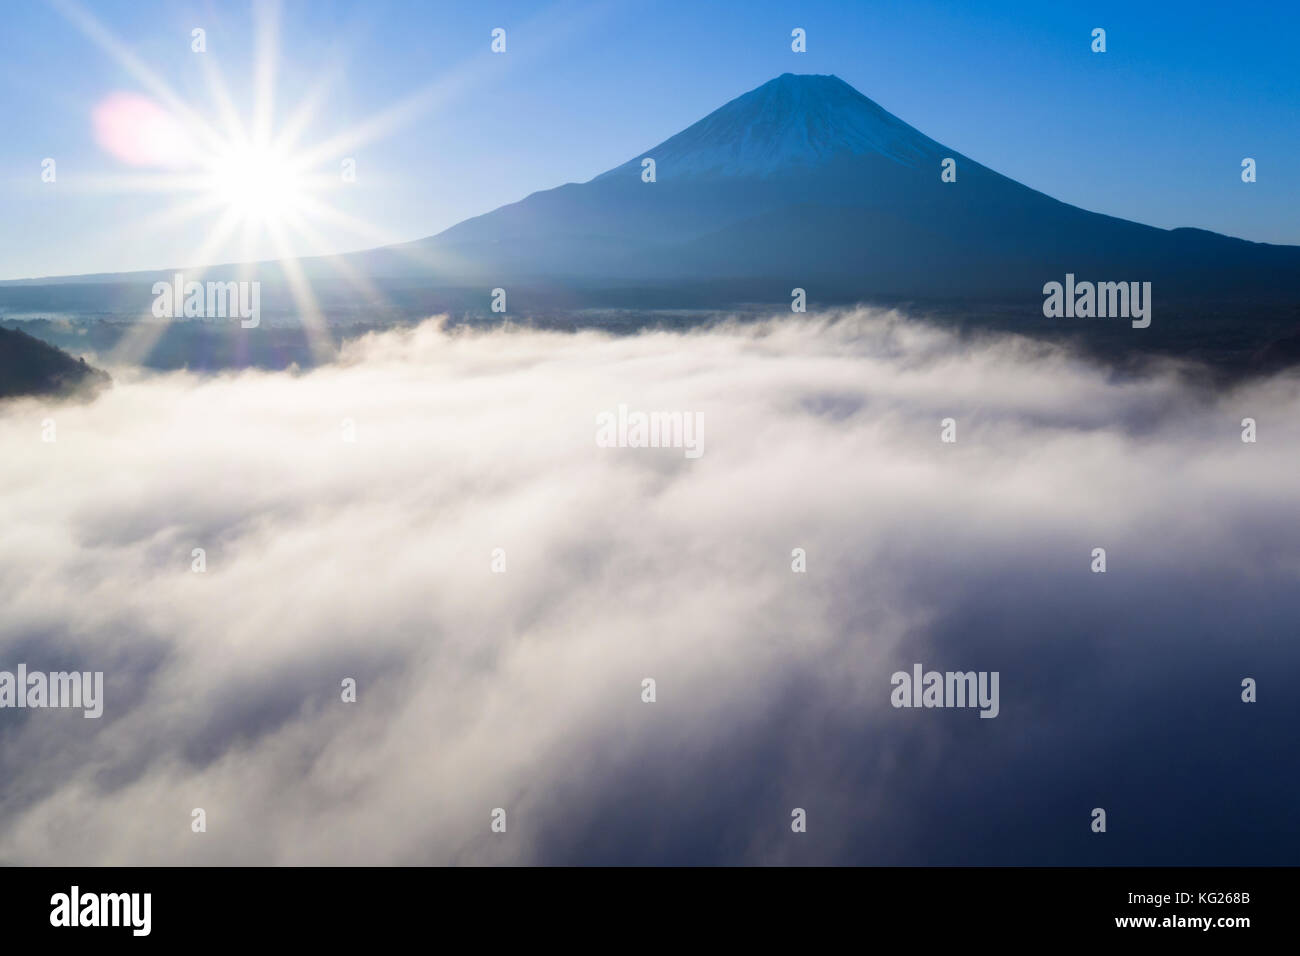 Wolken über den See Ashinoko mit Fuji hinter Mount Fuji - hakone - izu Nationalpark, Hakone, Shizuoka, Honshu, Japan, Asien Stockfoto